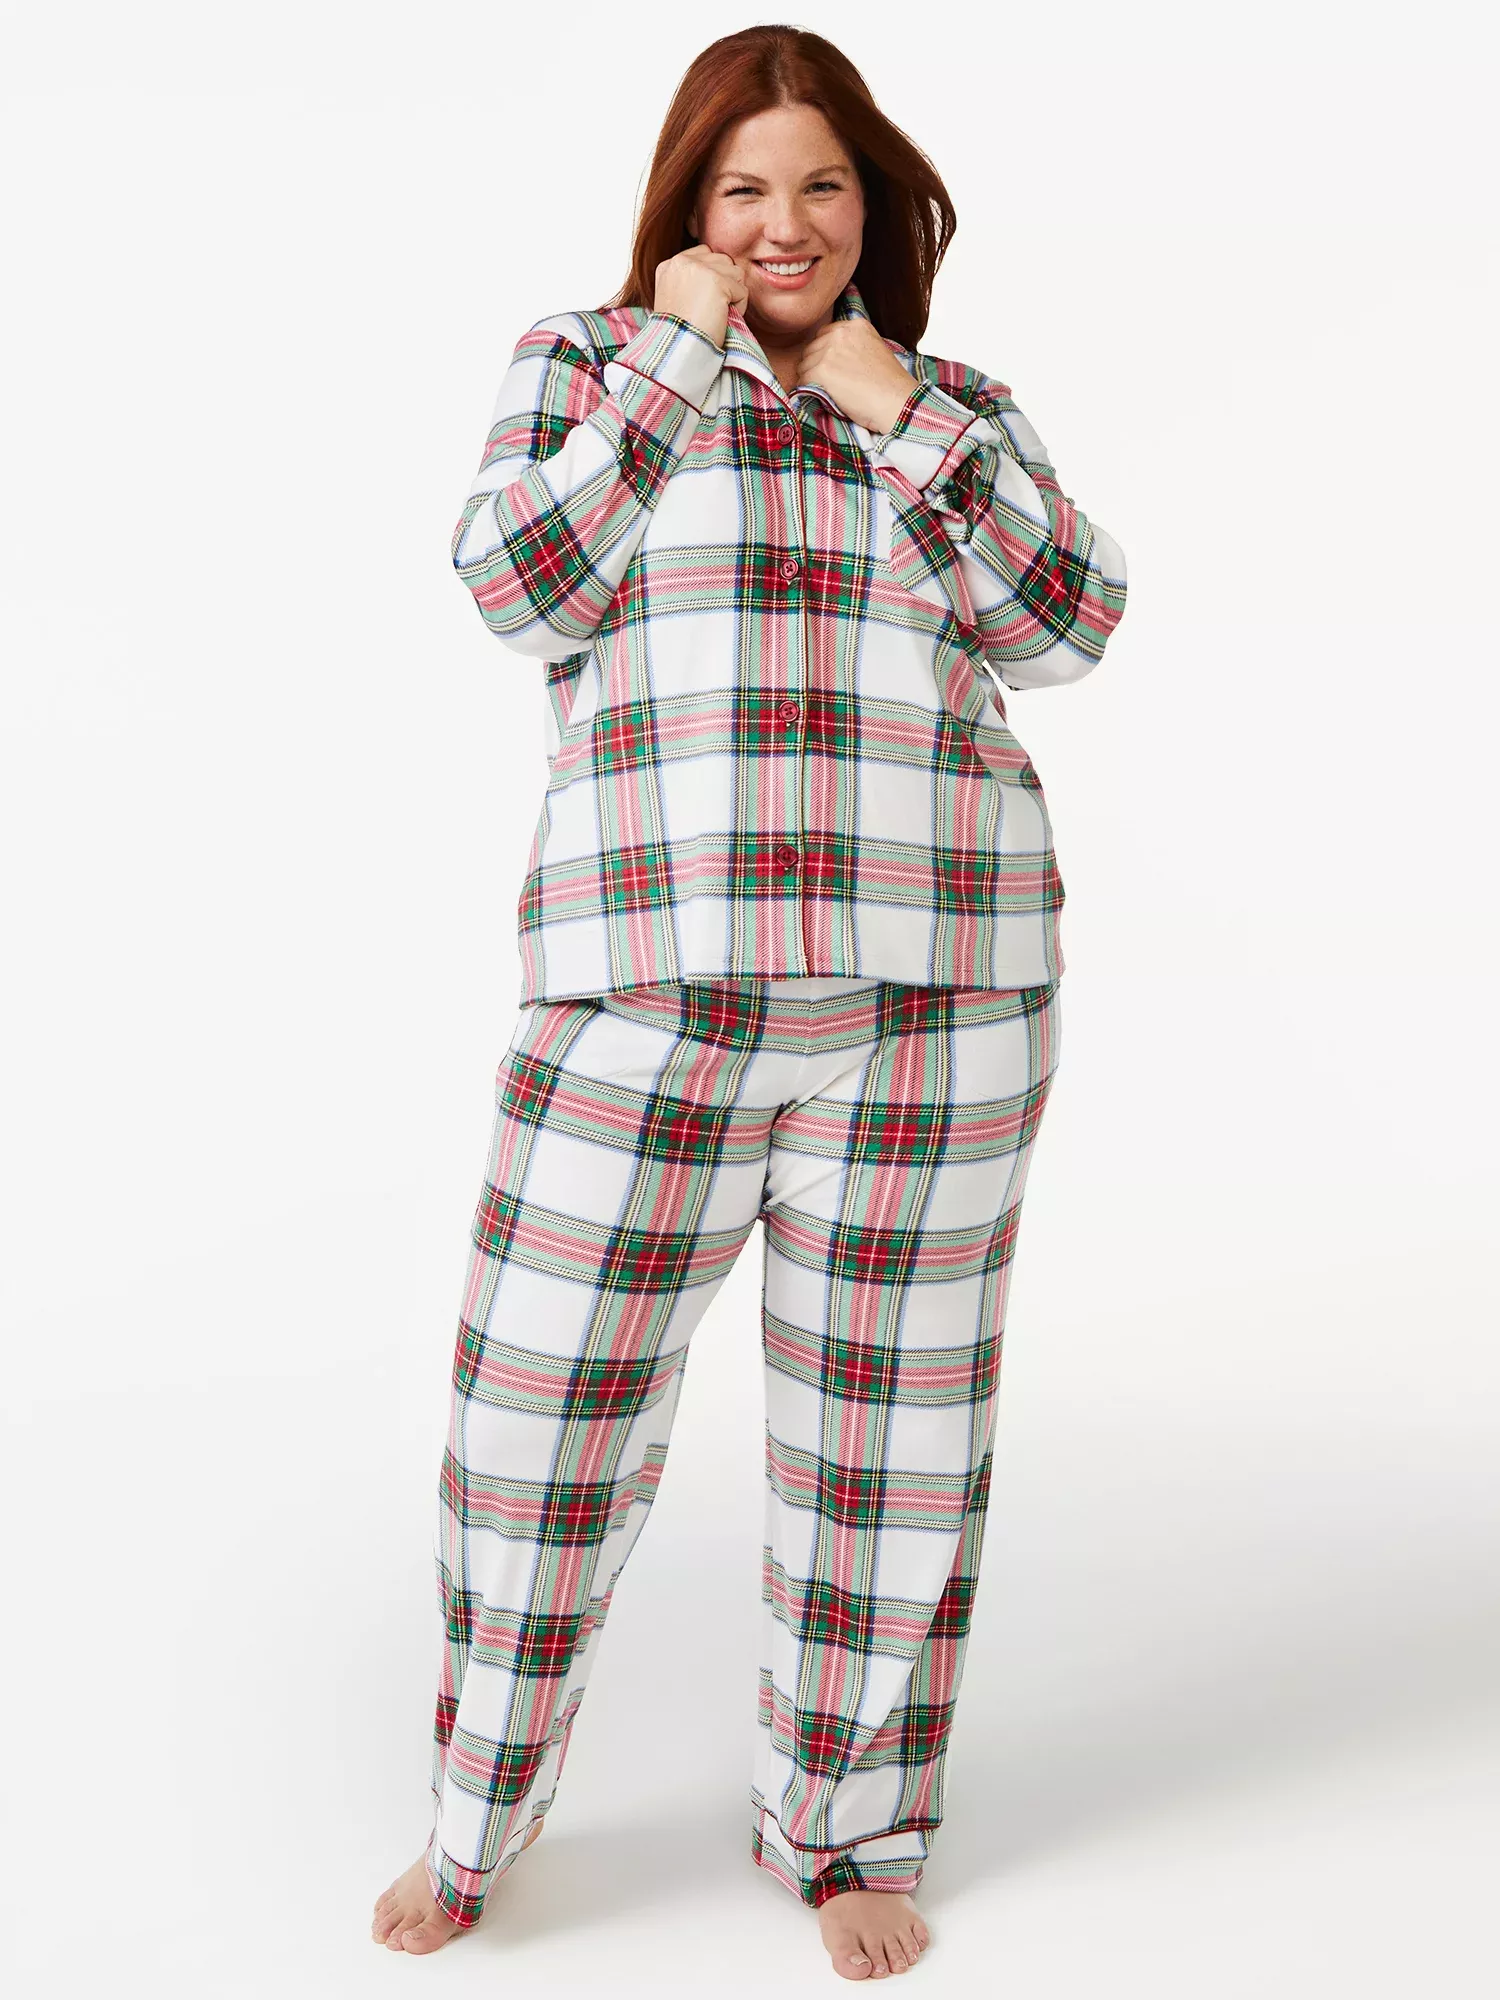 Joyspun Women's Long Sleeve Sleep Top and Jogger PJ Set, 2-Piece, Sizes up  to 3X